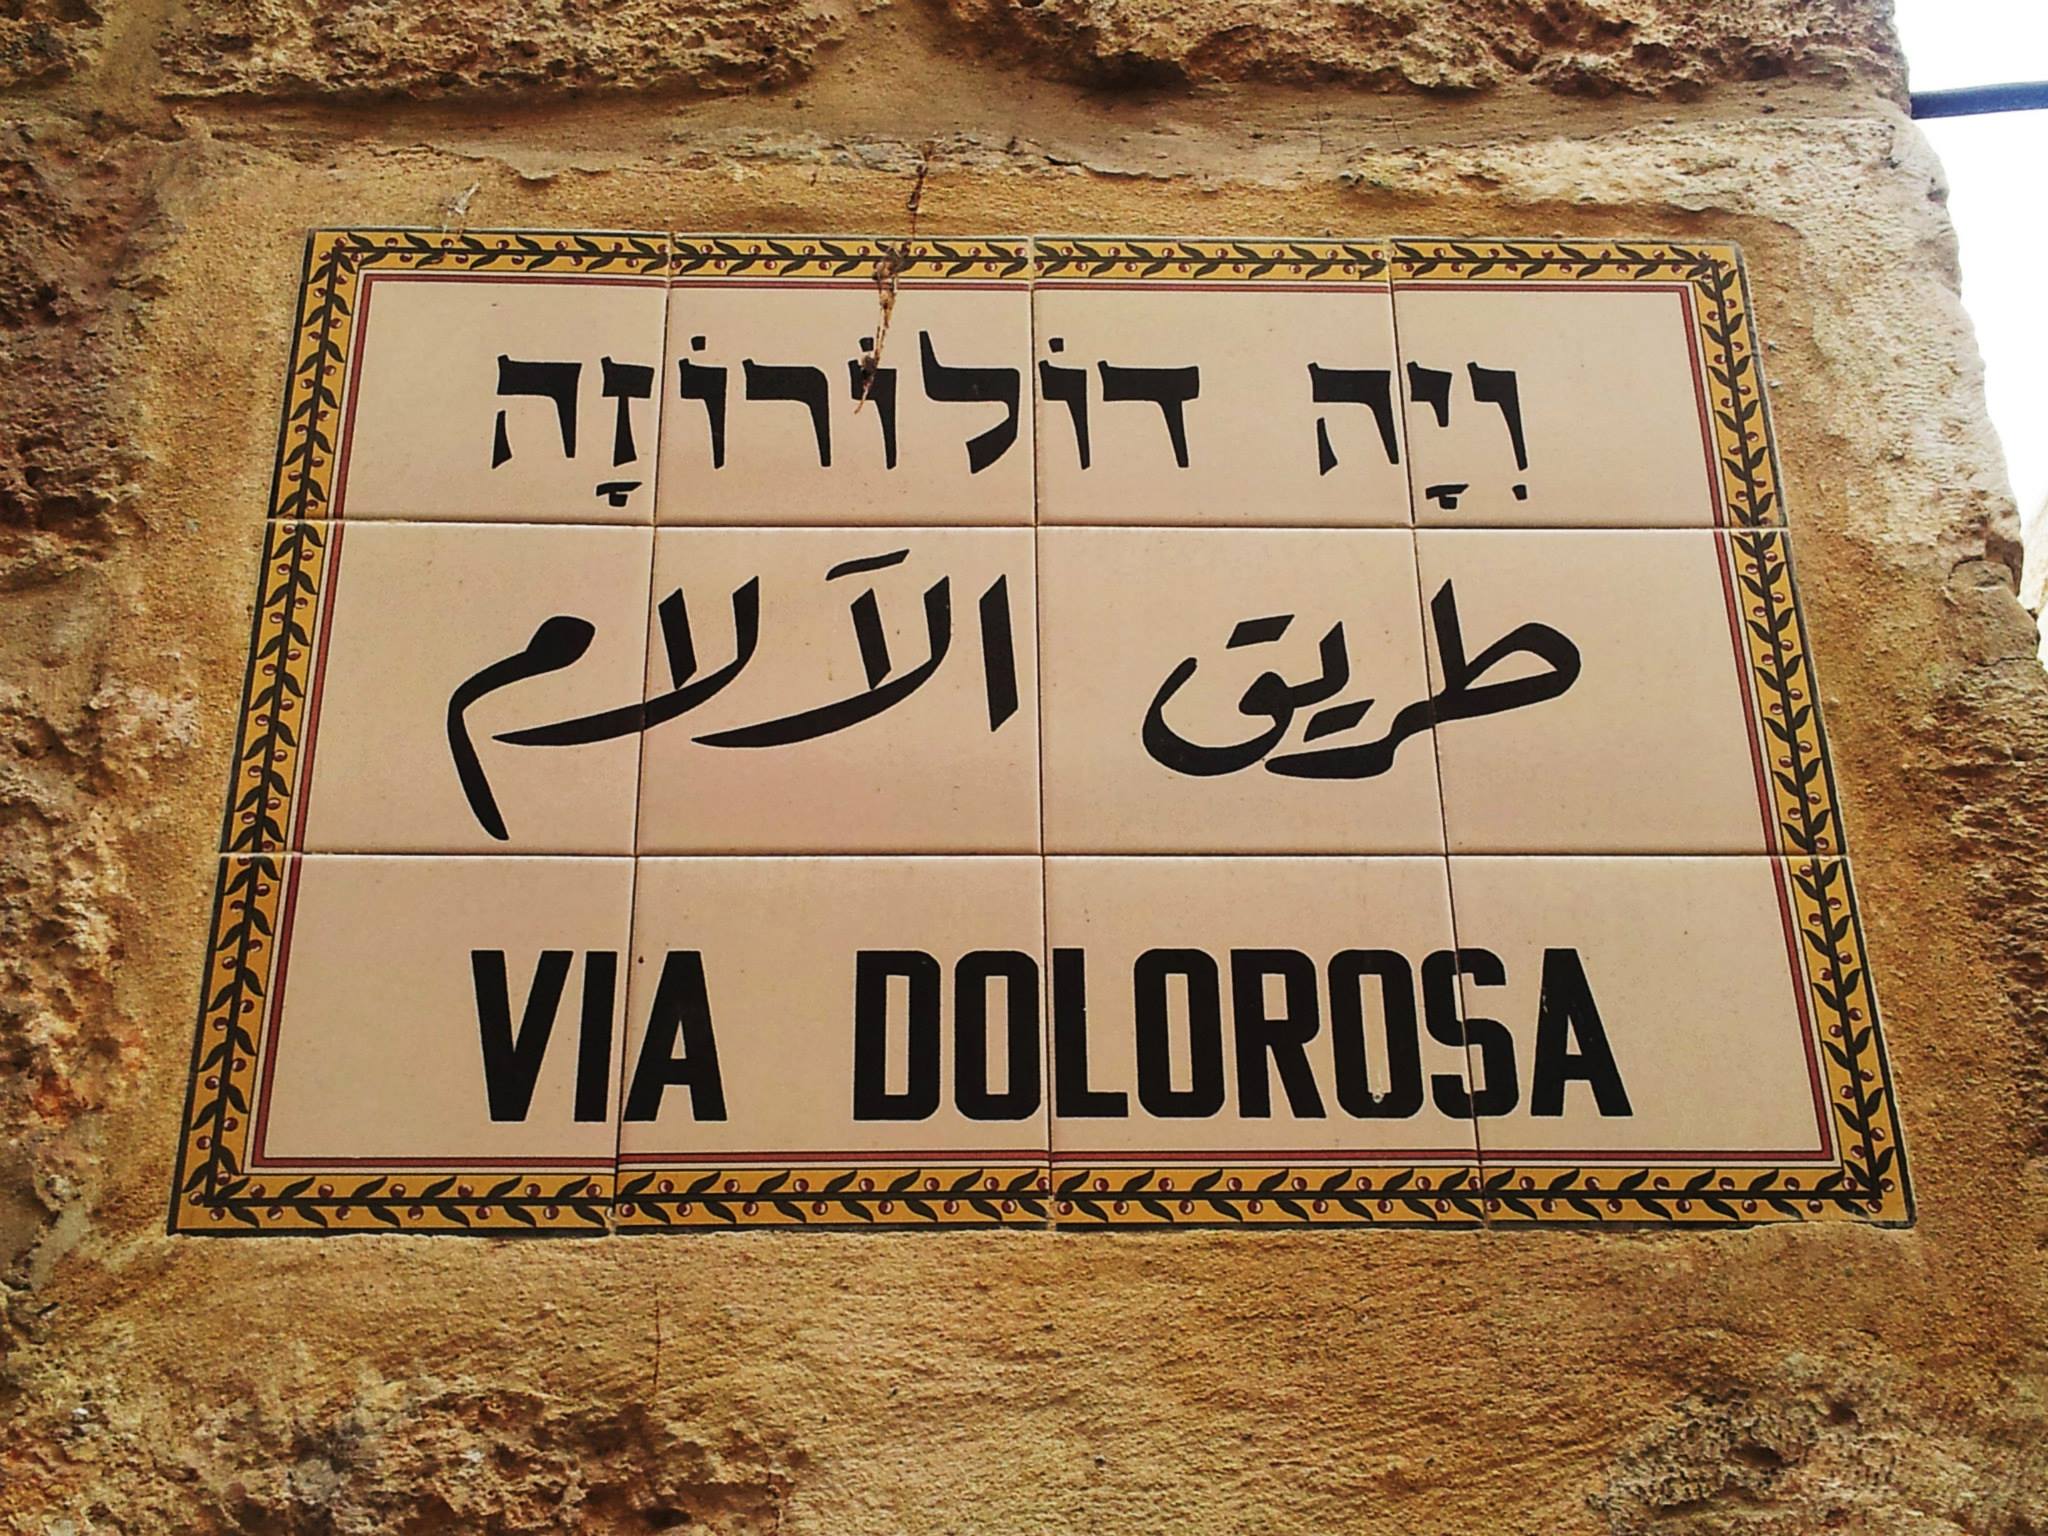 Via Dolorosa, de weg die Jezus met zijn kruis aflegde